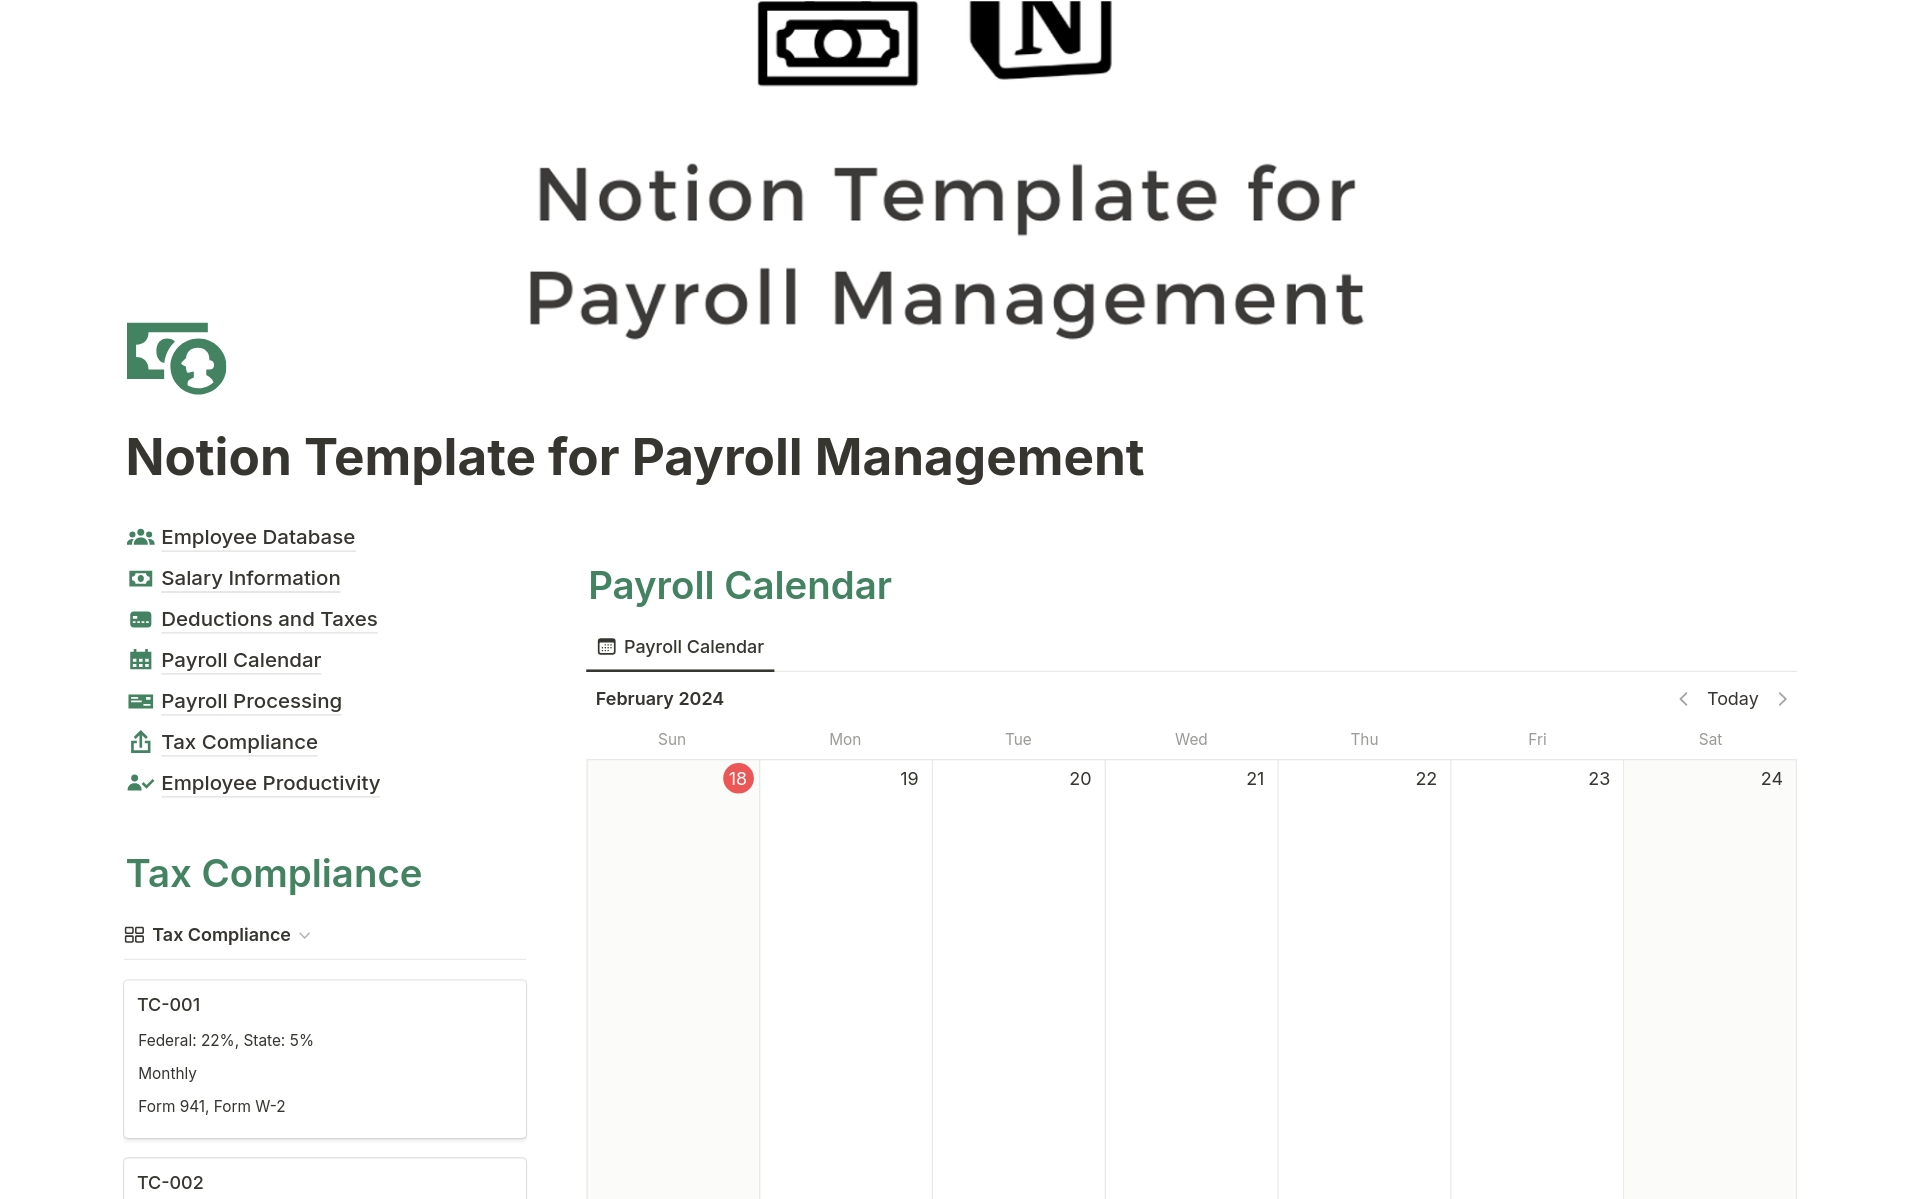 Vista previa de plantilla para Payroll Management